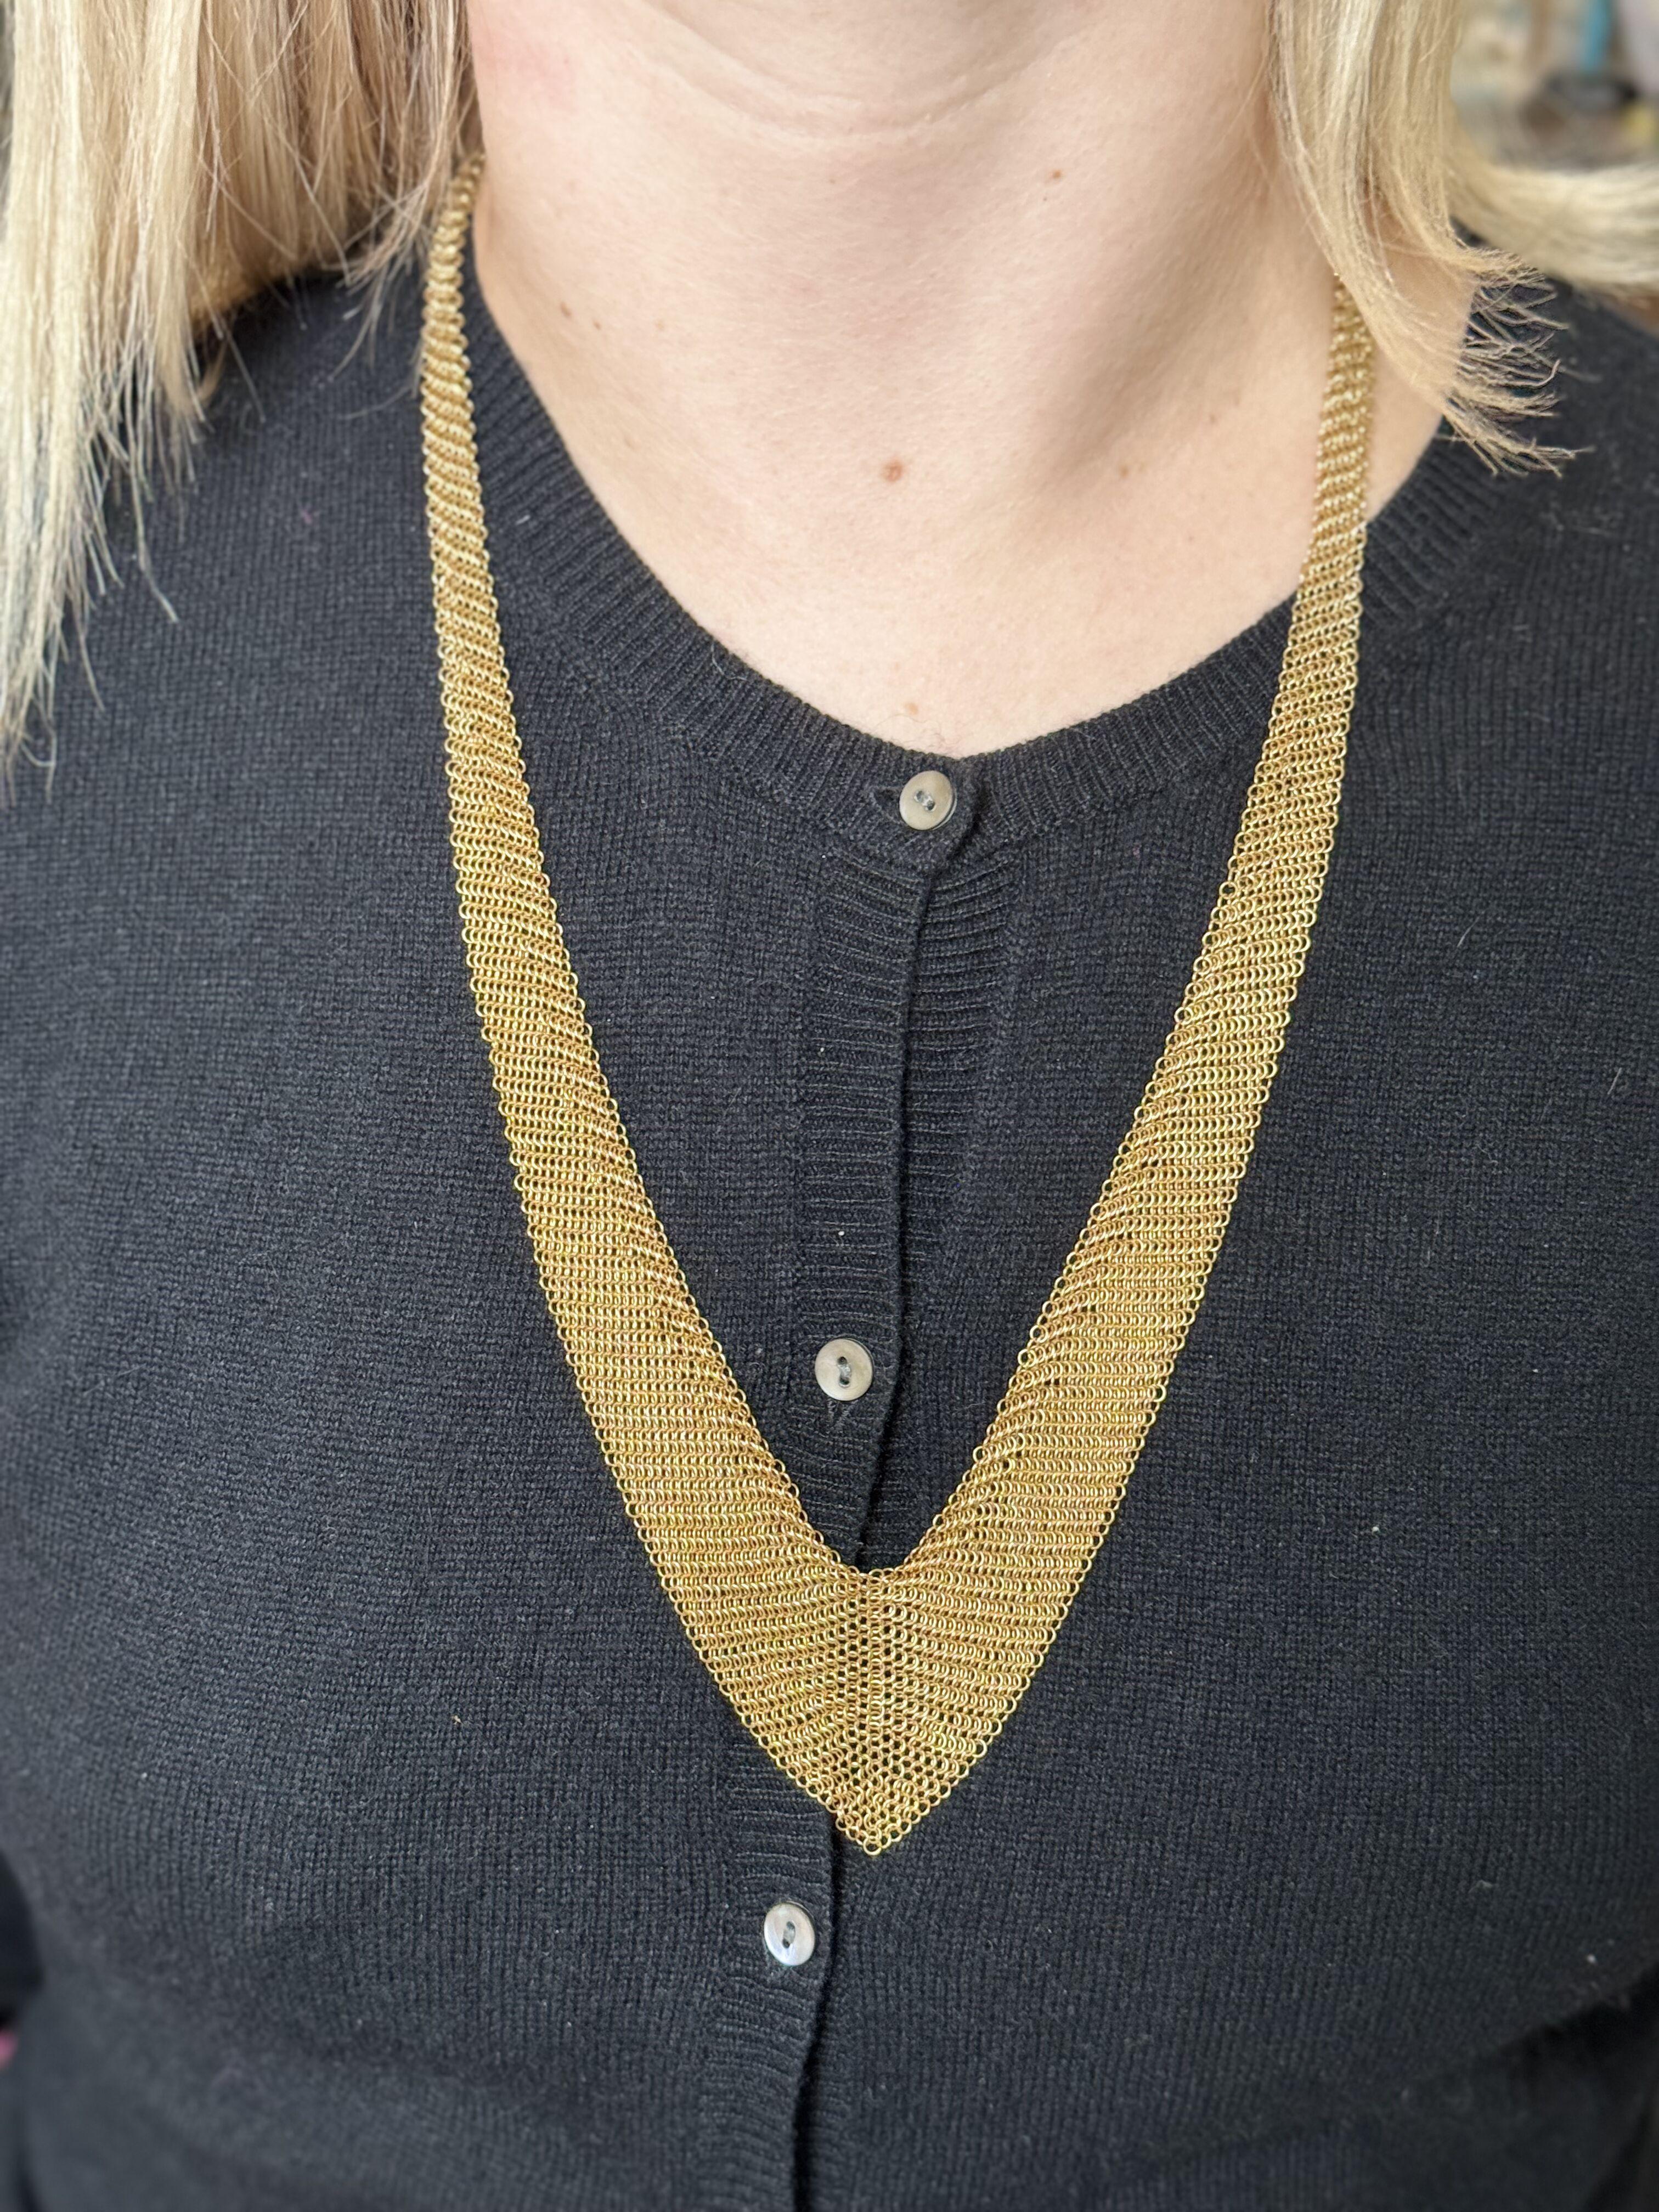 Collier iconique de foulard en maille, dessiné et créé par Elsa Peretti pour Tiffany & Co, en or jaune 18k. Le collier est long de 27